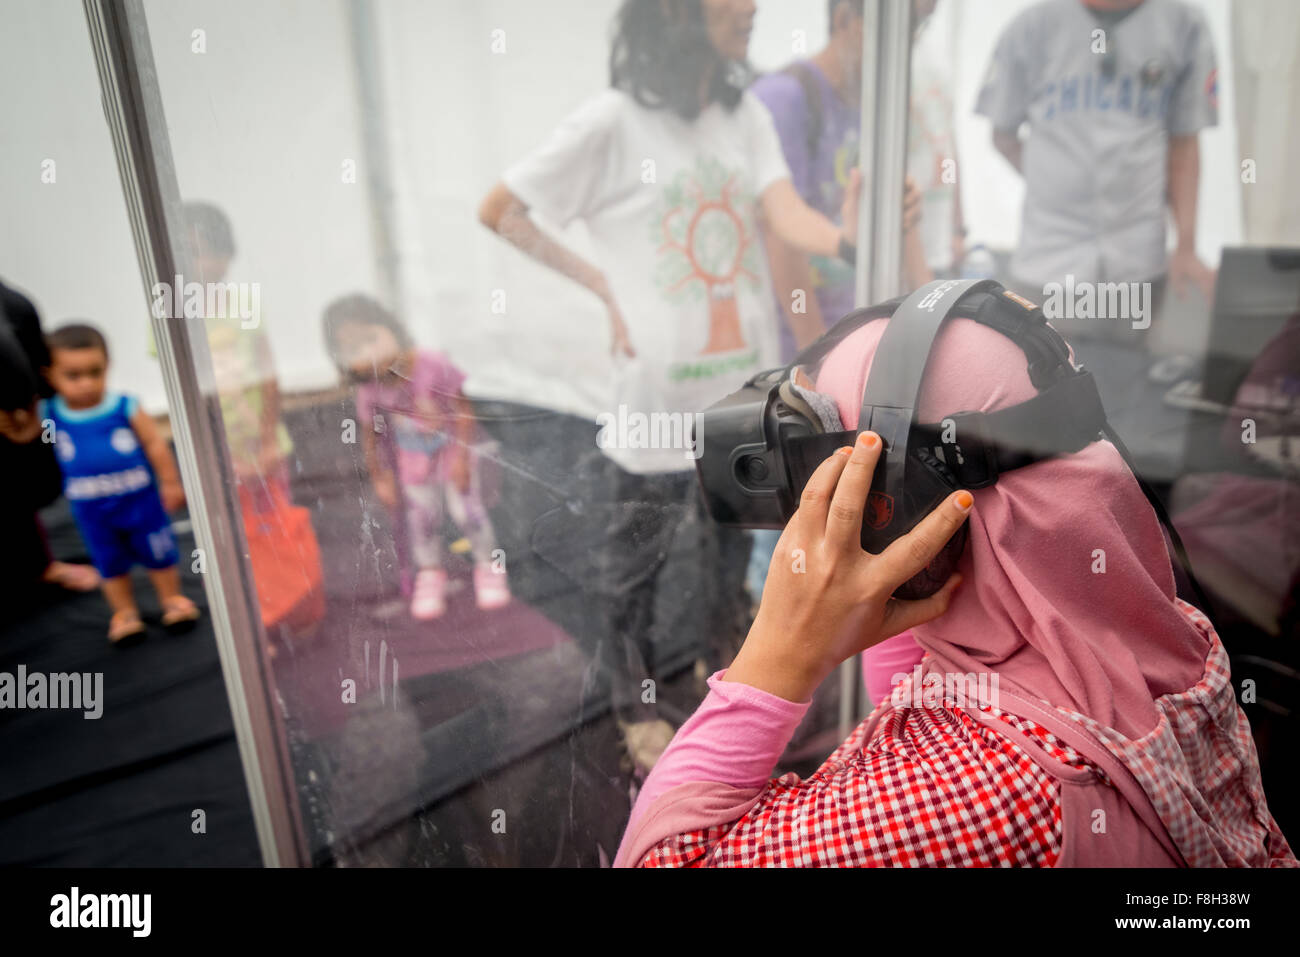 Visiteur regardant un écran de réalité virtuelle sur la biodiversité des forêts tropicales et les impacts des feux de forêt, lors d'un événement public organisé par Greenpeace. Banque D'Images